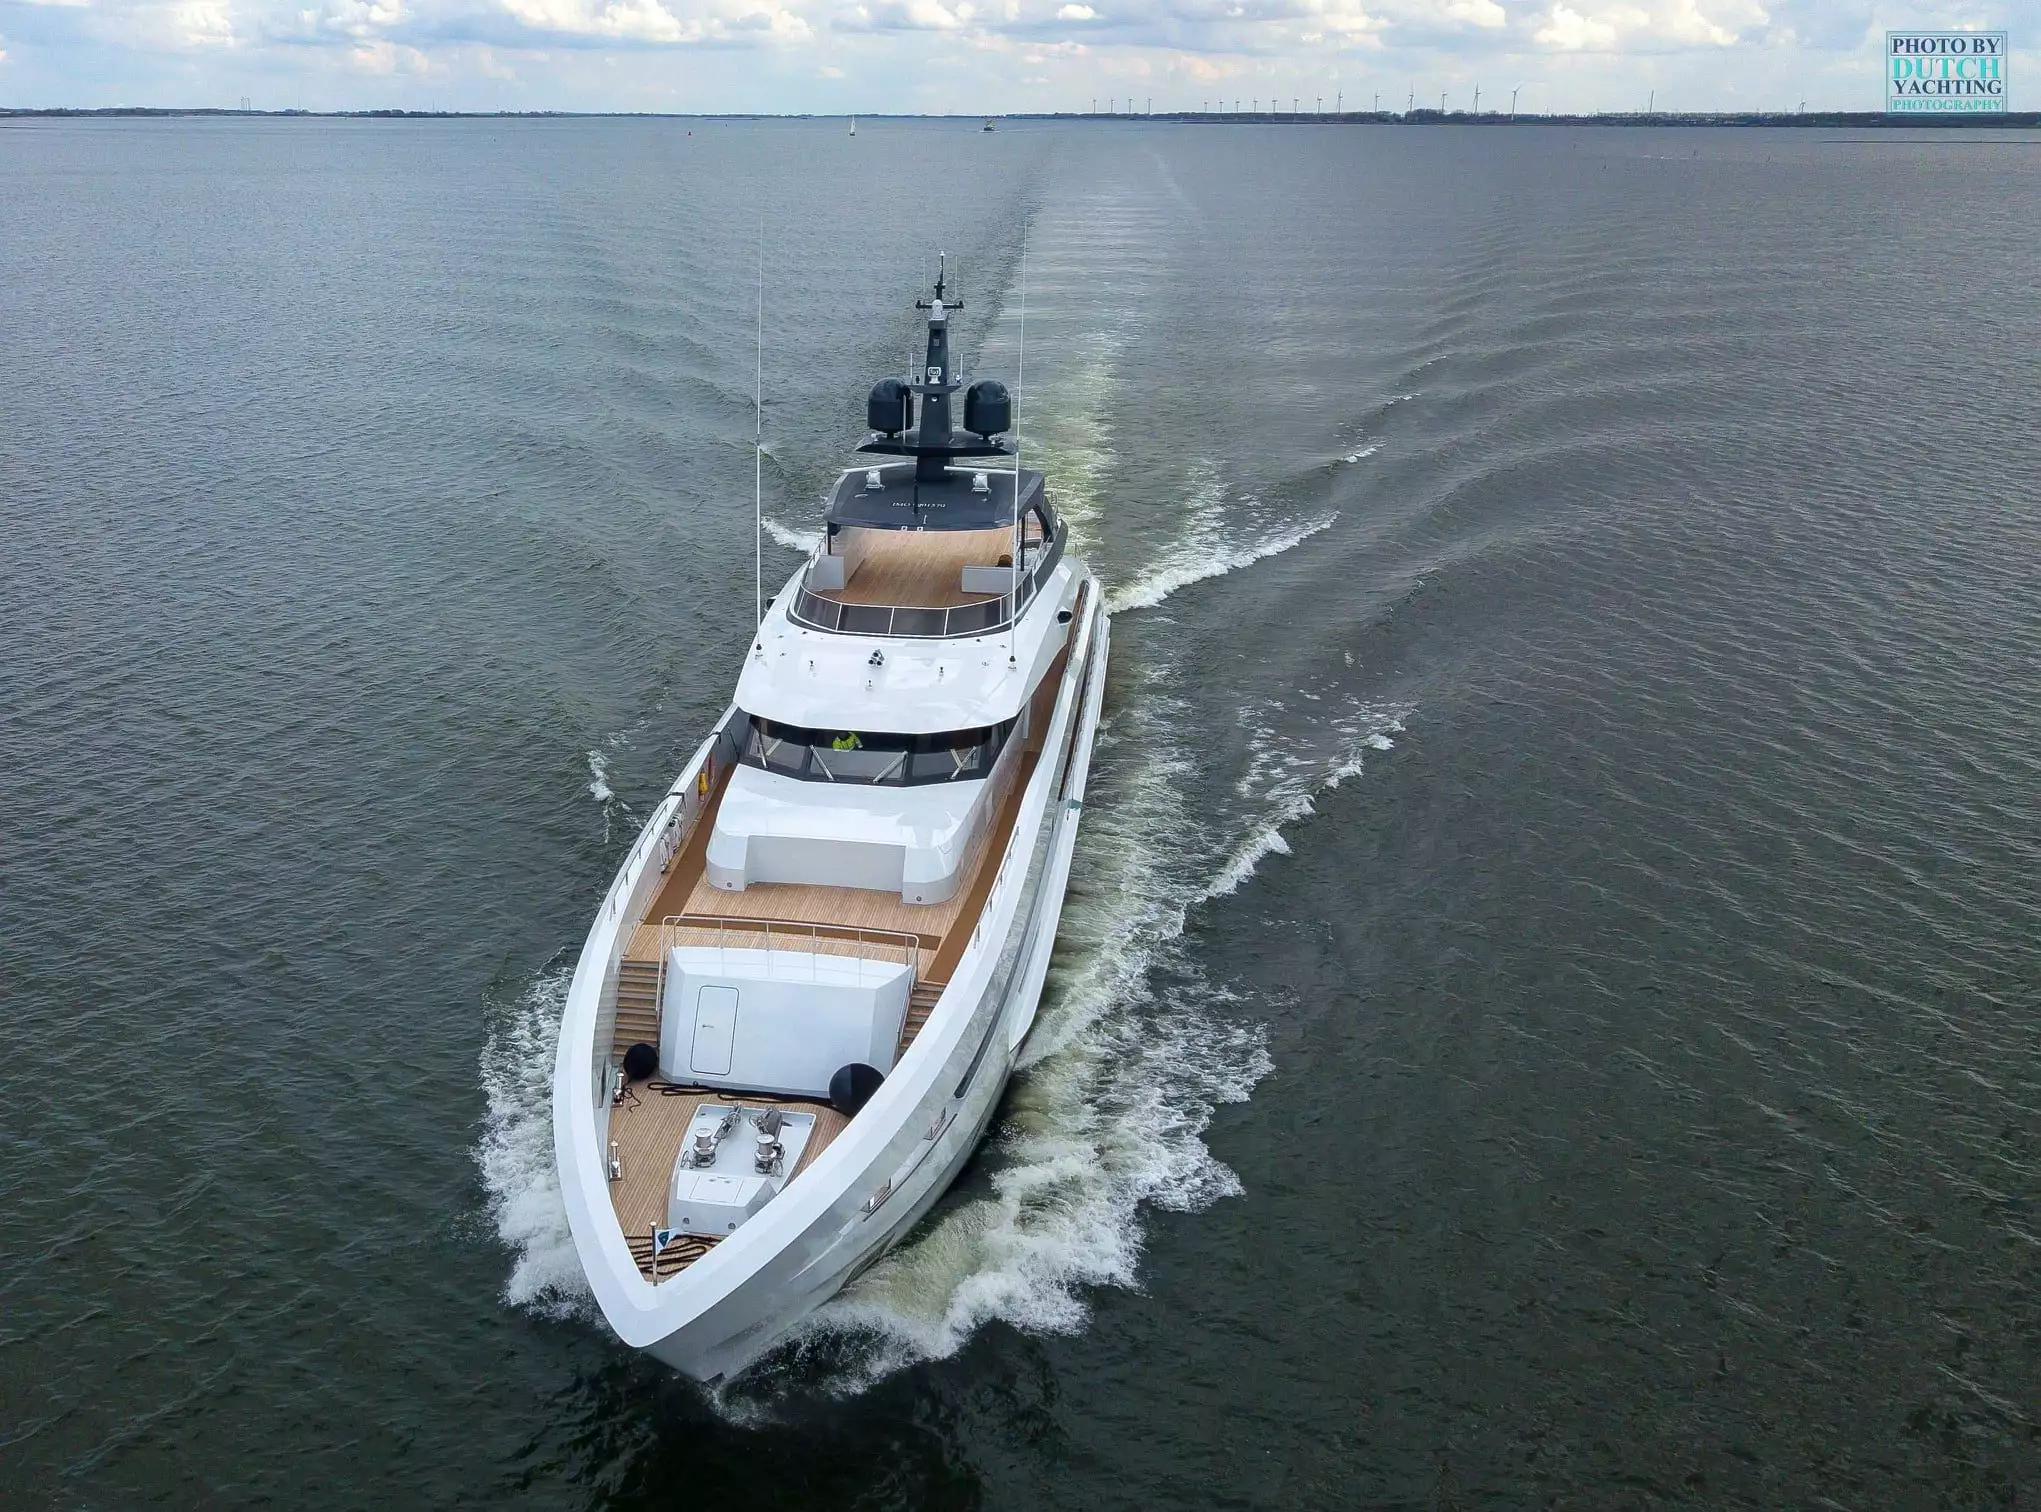 AQUAMARINE Yacht • Heesen Yachts • 2021 • Owner David Davidovich